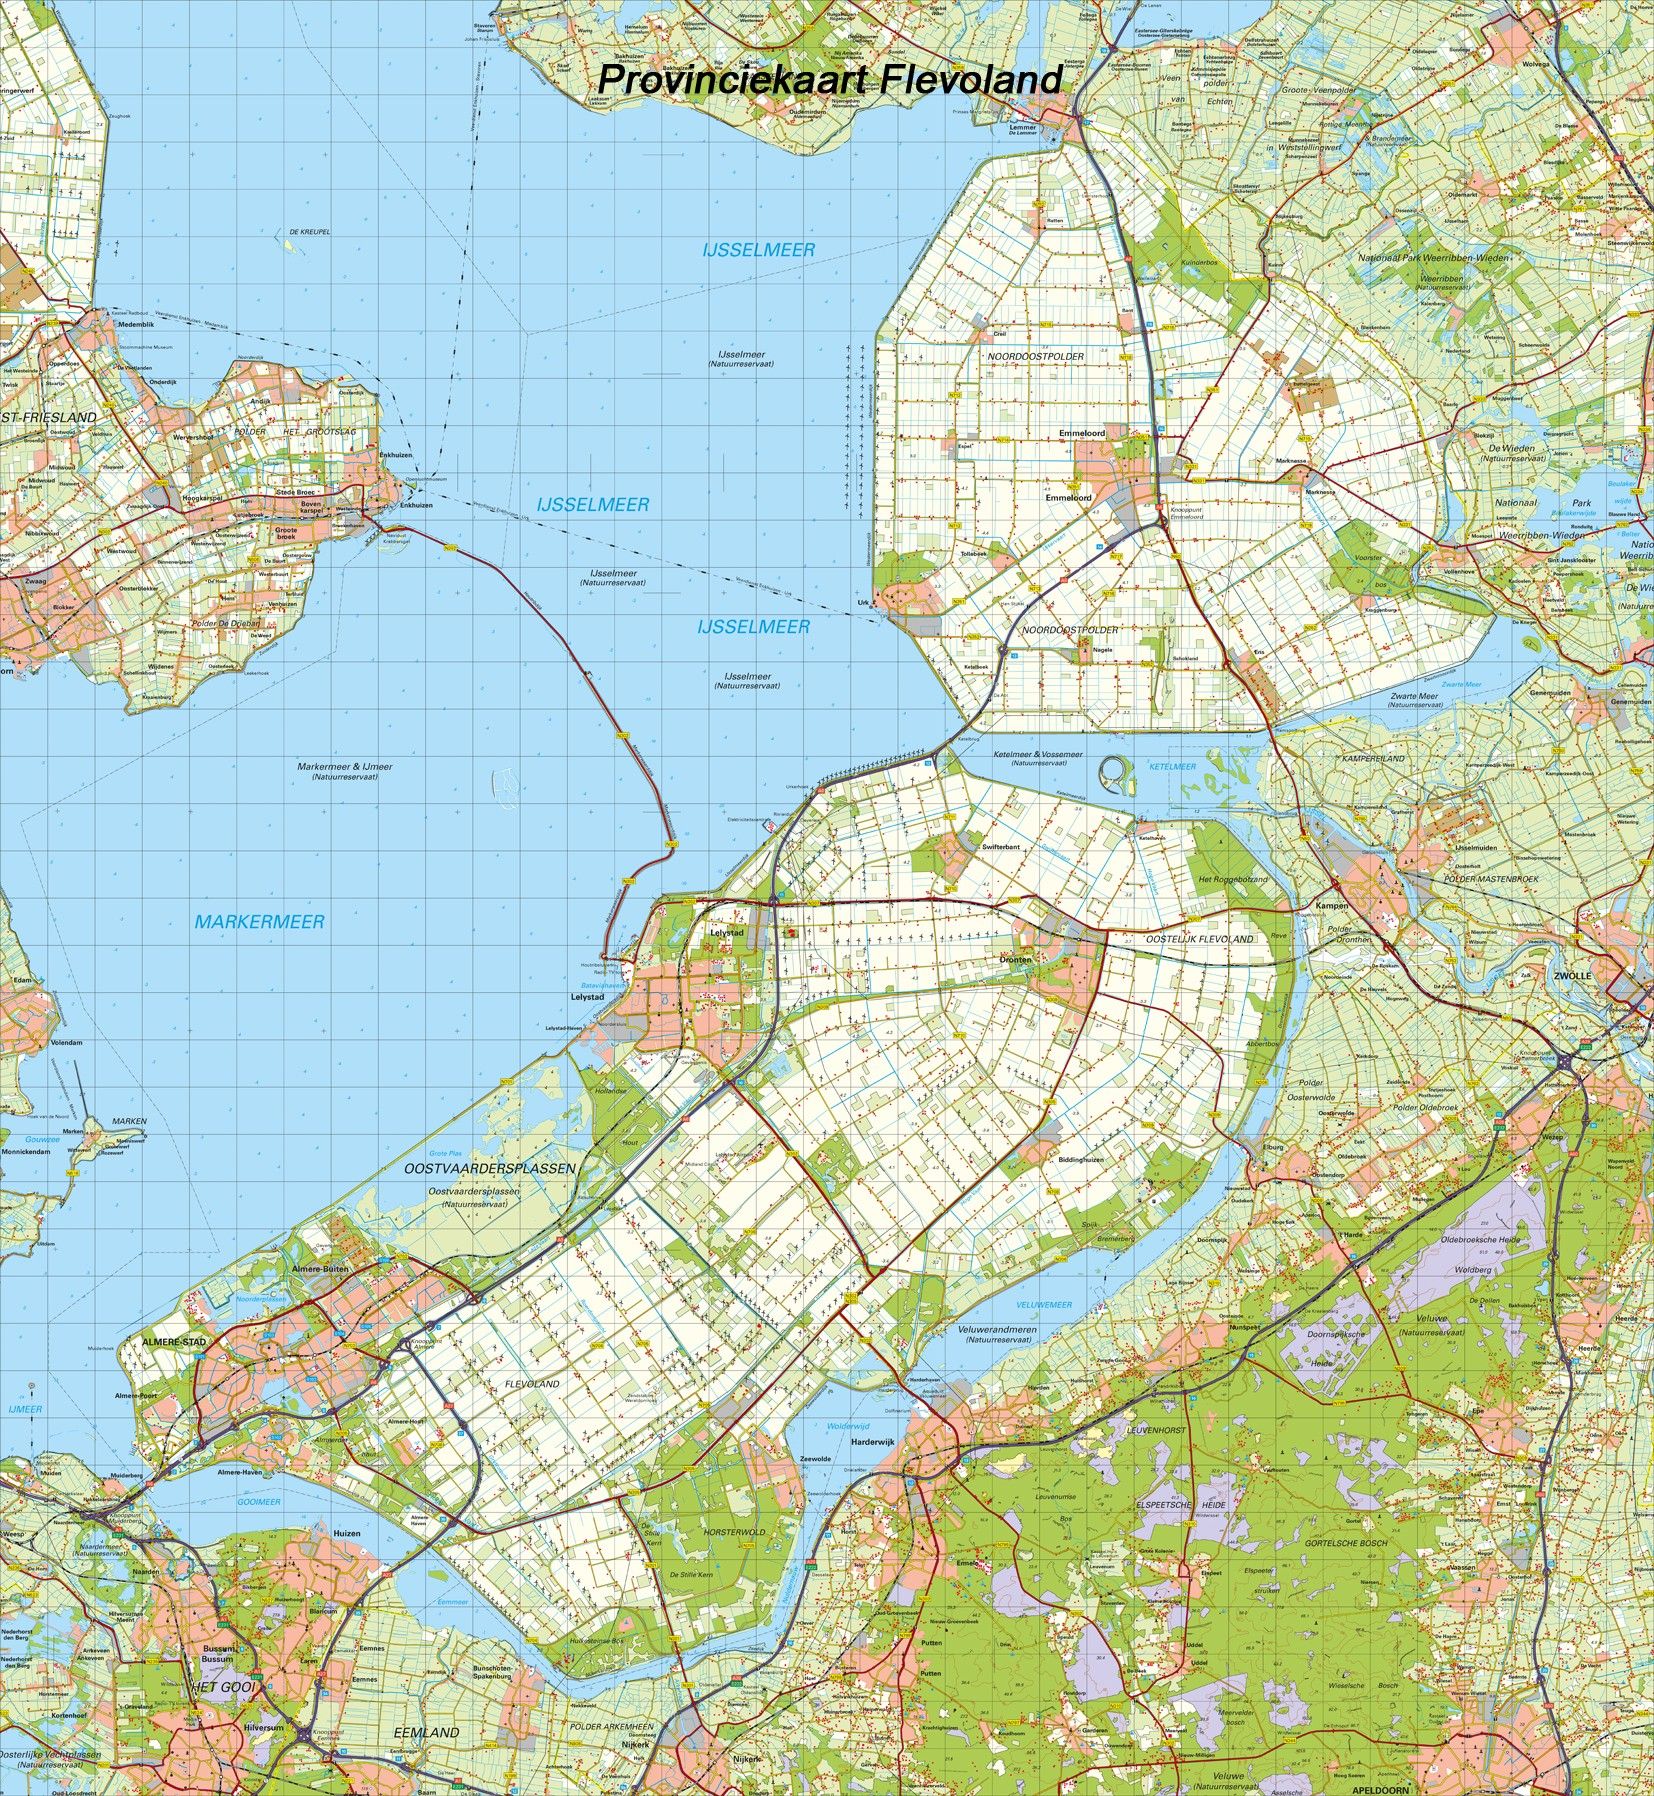 Digitale Provinciekaart Flevoland 1:100.000